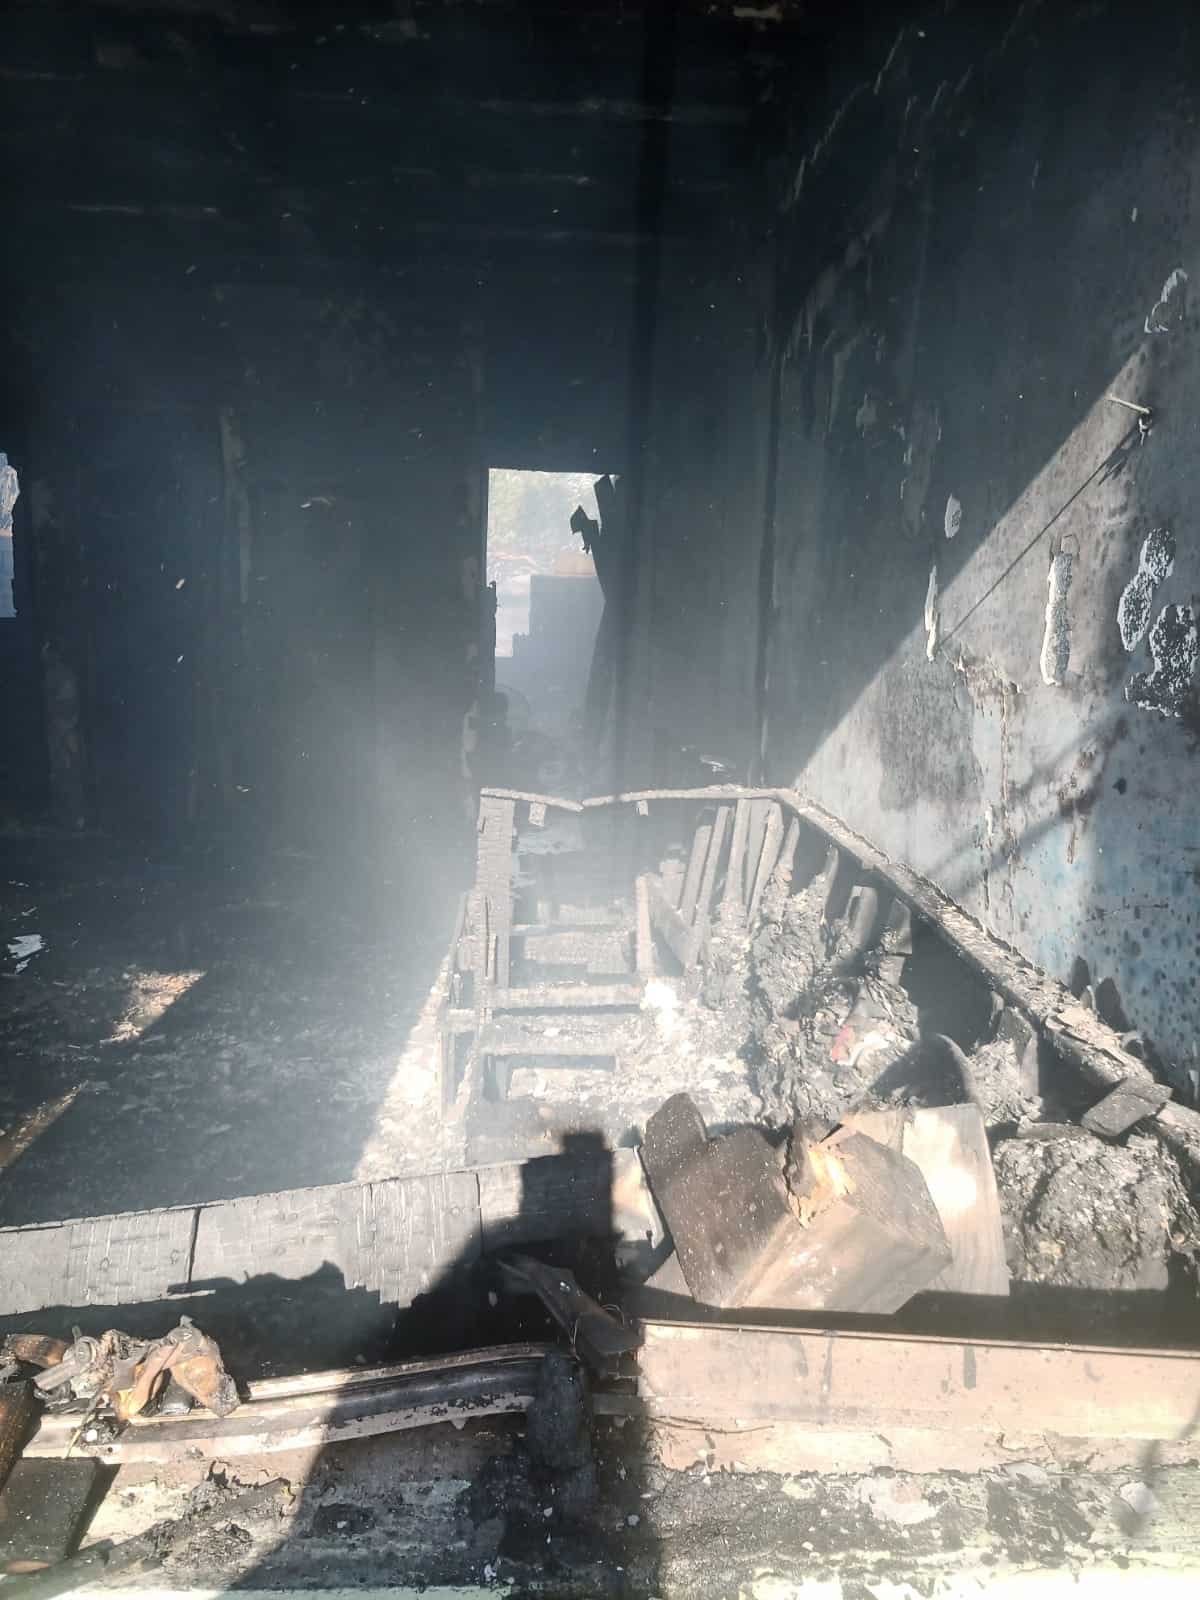 Vivienda fue arrasada por el fuego la tarde del sábado debido a una quema de basura. (Foto: La Tarde/Staff)